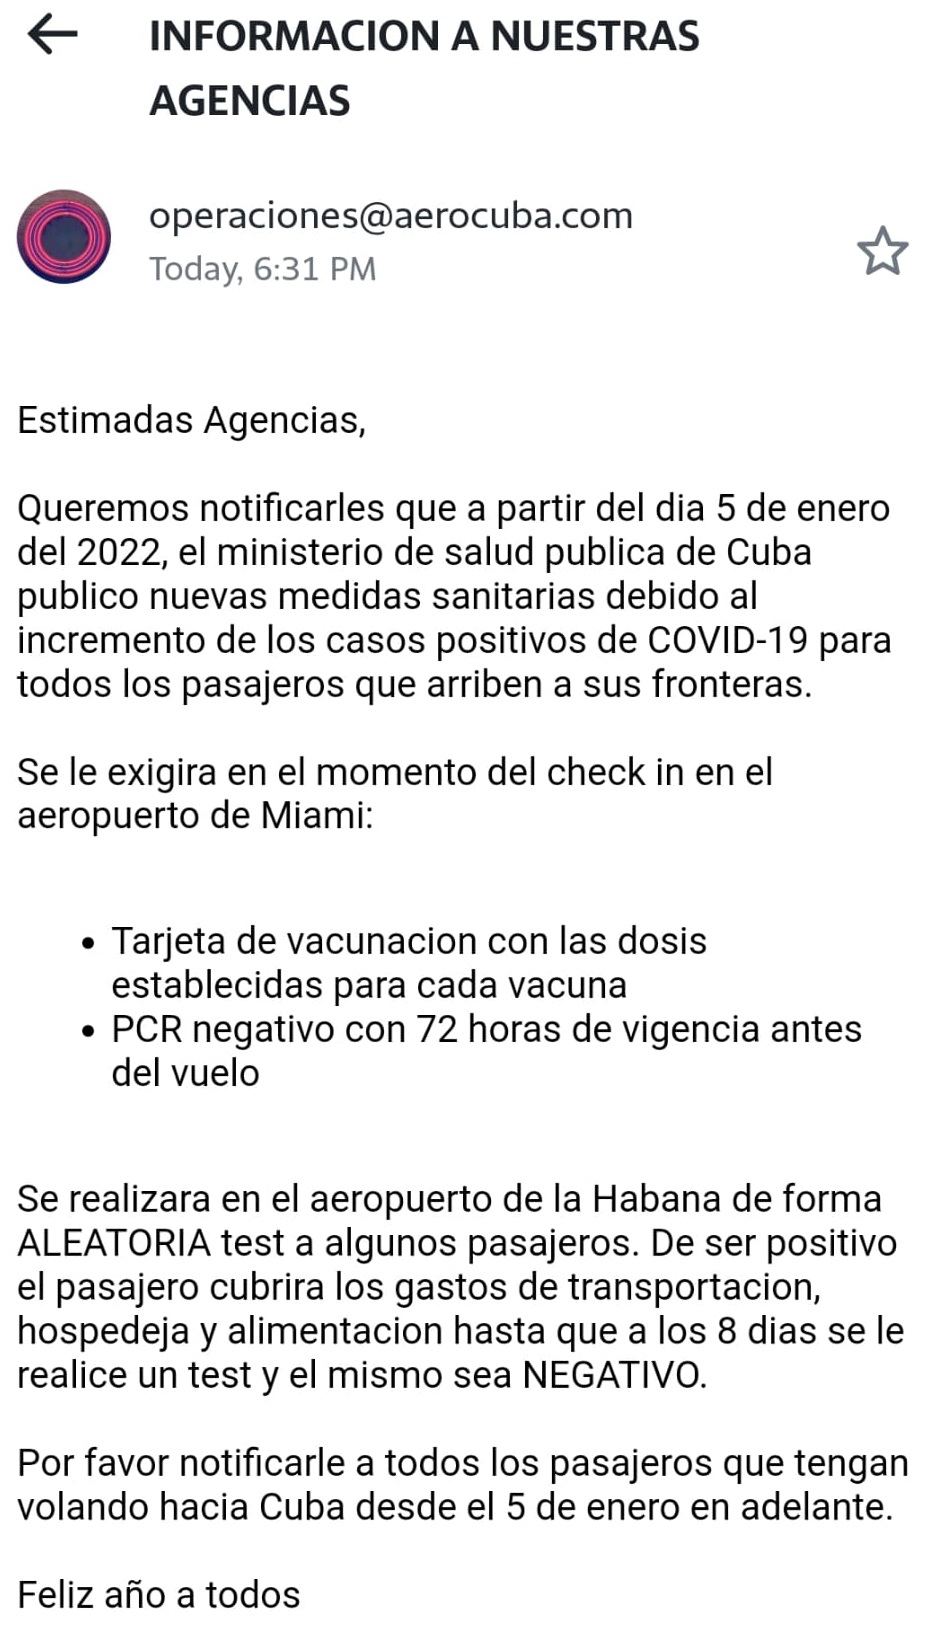 En el Aeropuerto Internacional José Martí de La Habana se aplicarán pruebas aleatorias de COVID-19